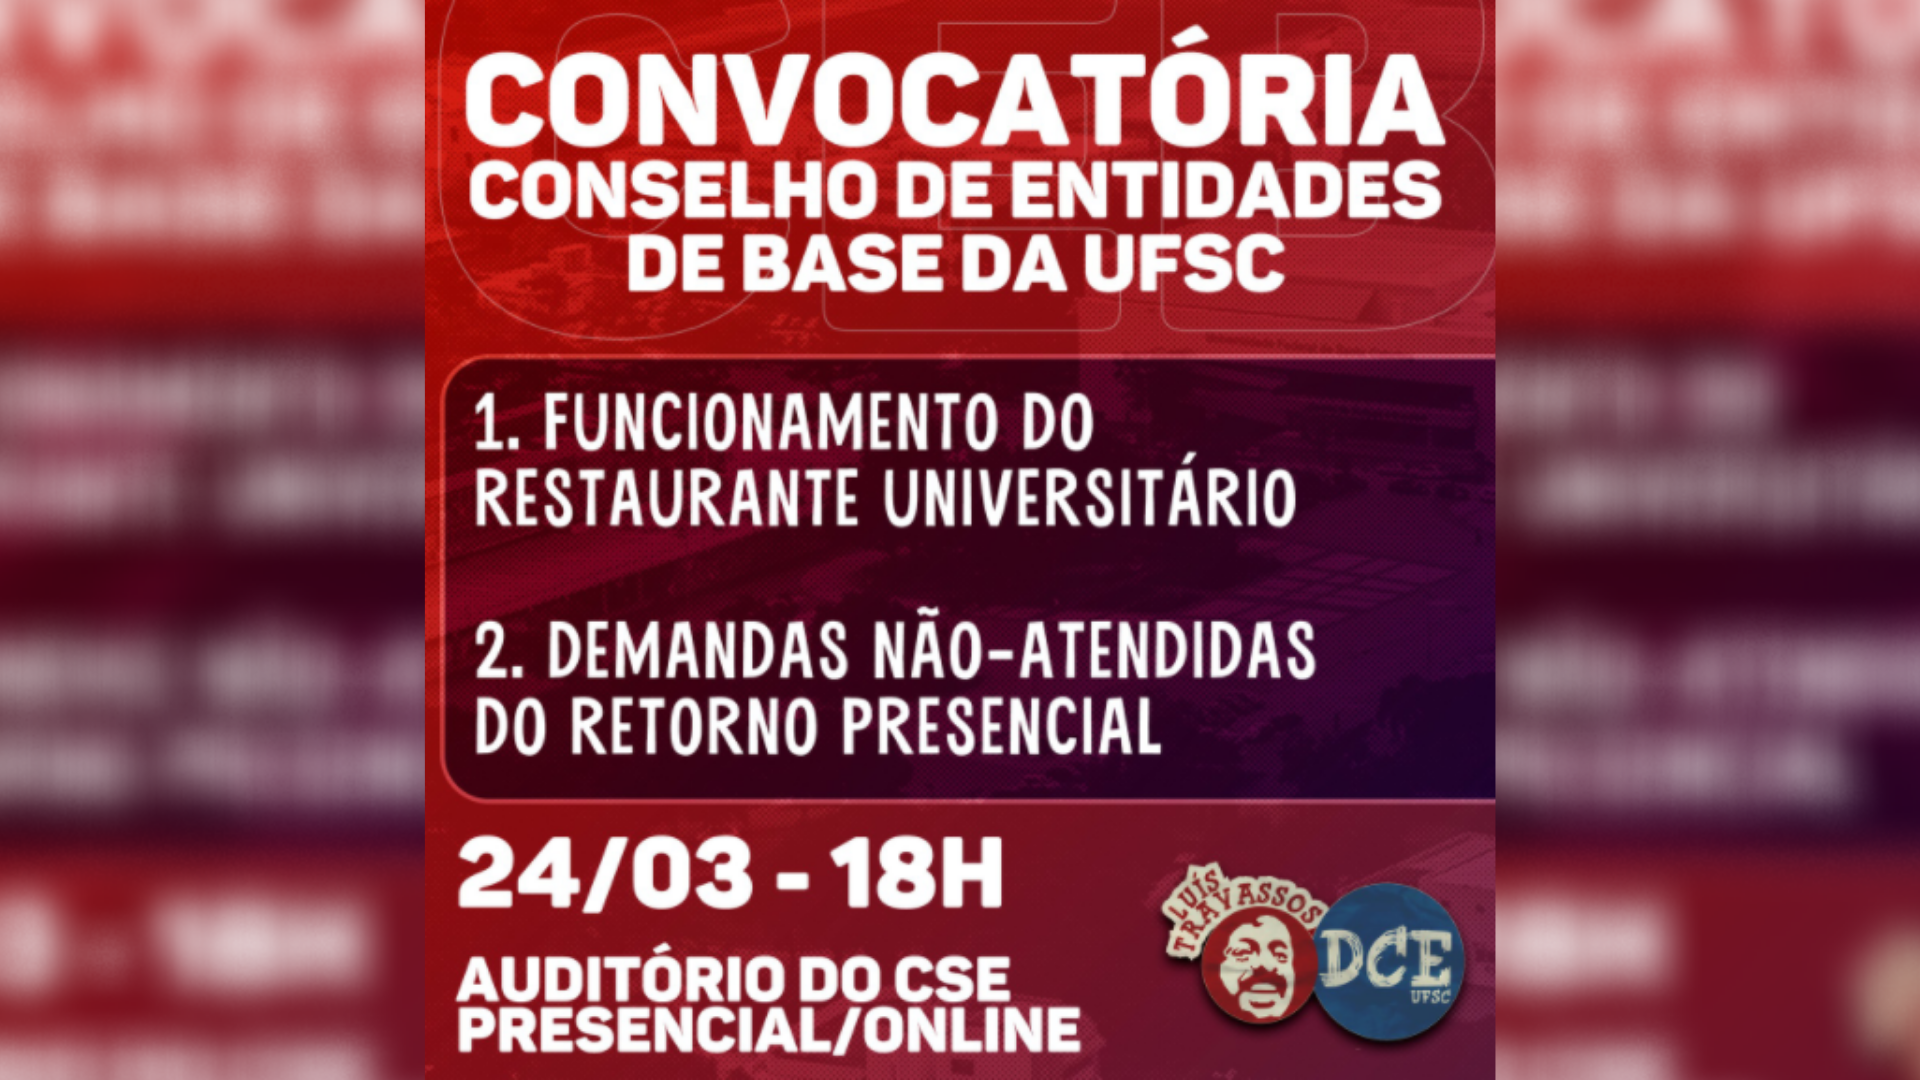 Imagem: convocação de reunião do CEB por DCE Luís Travassos.